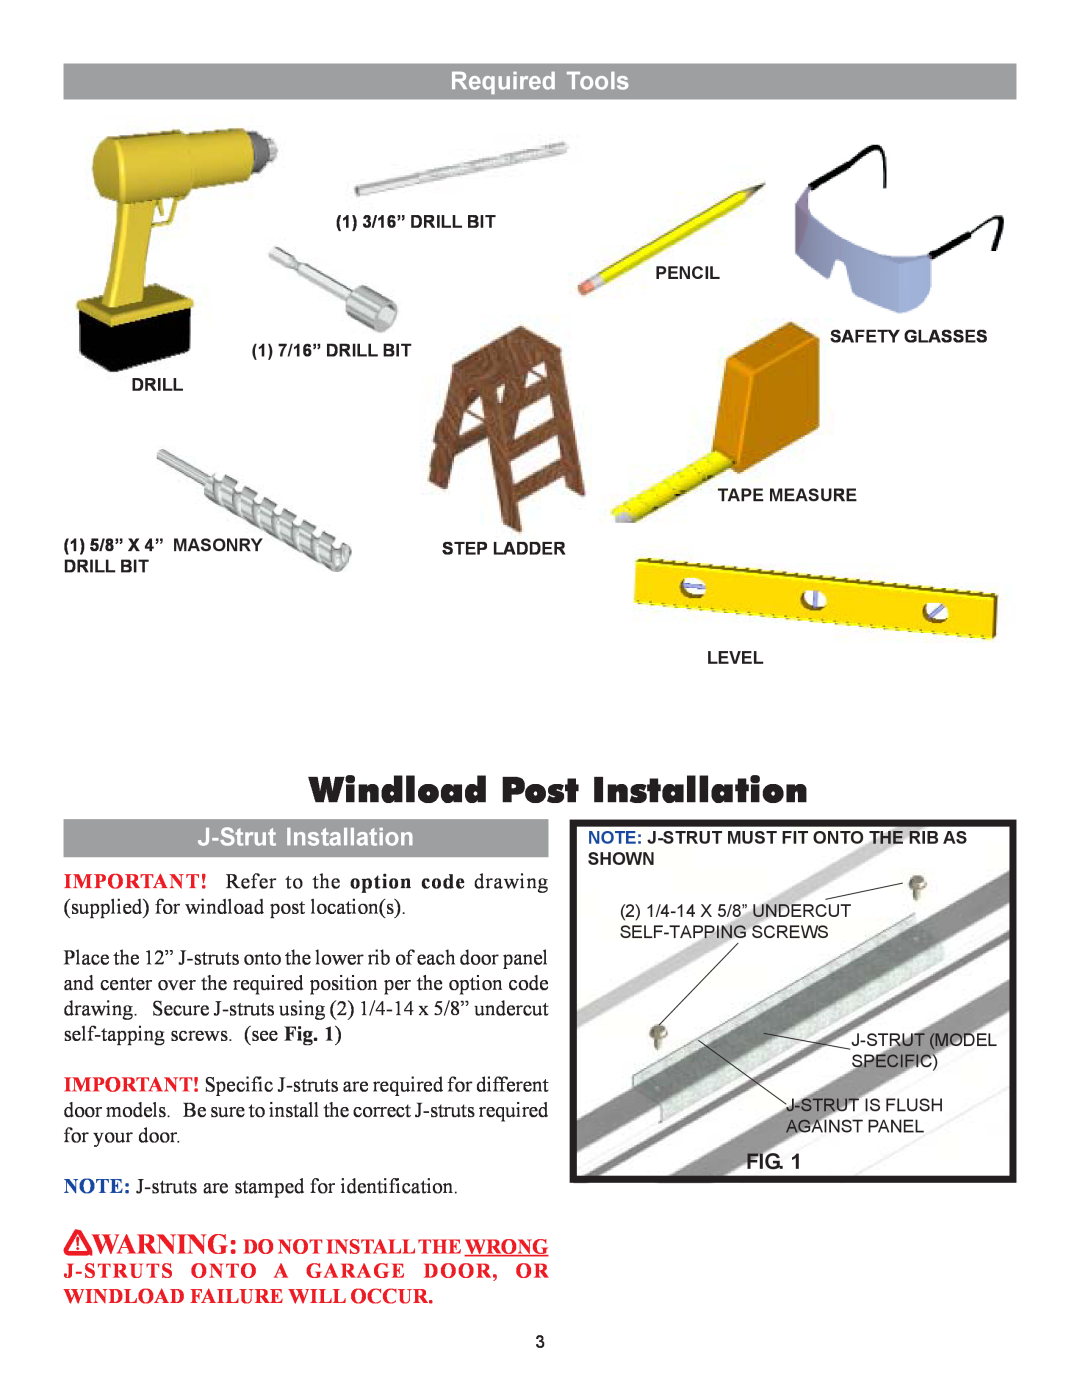 Wayne-Dalton 9100 installation instructions Windload Post Installation, Required Tools, J-StrutInstallation 